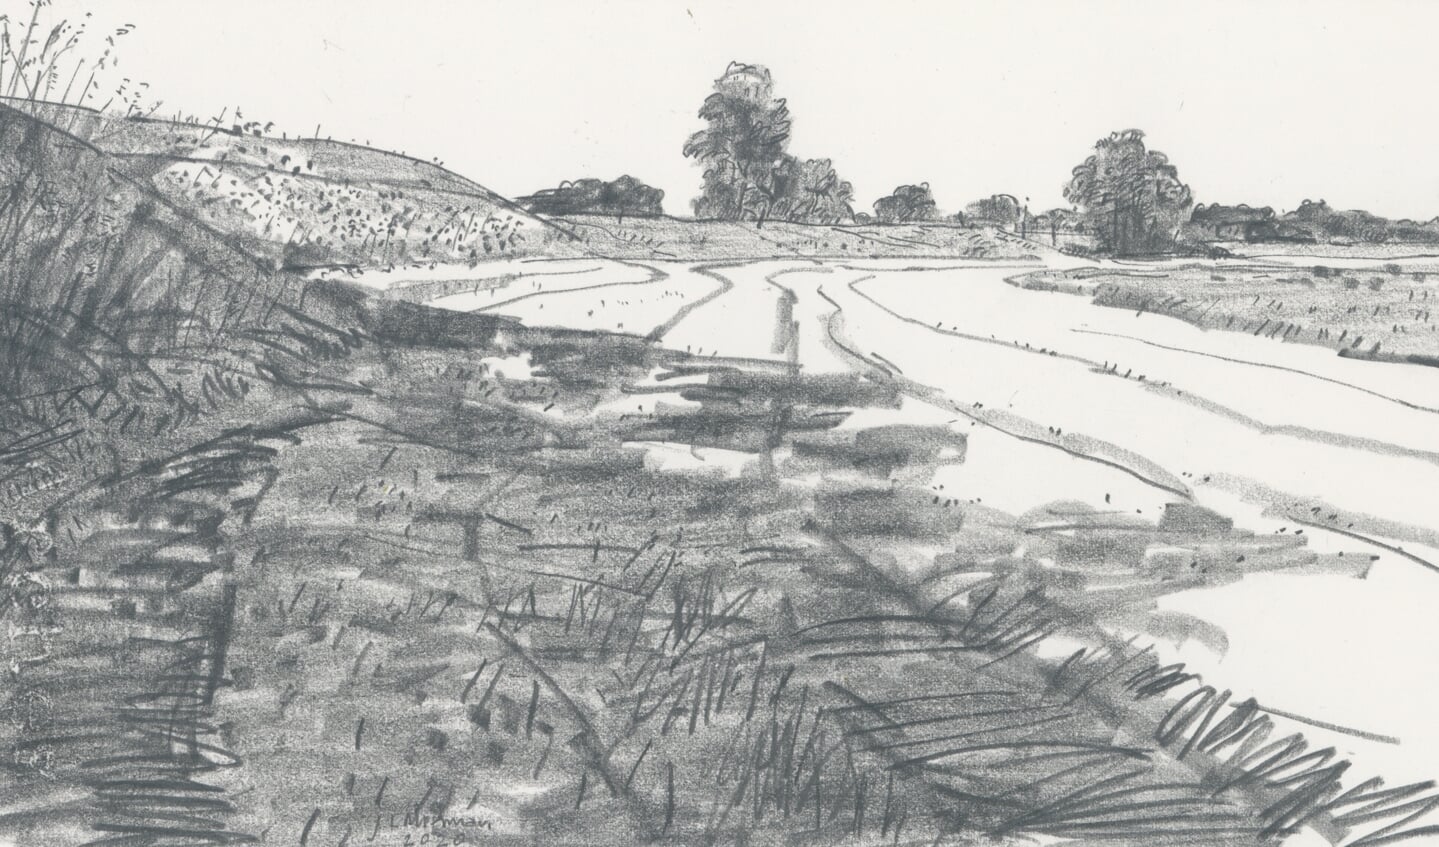 Grafiettekening op papier. Titel: Langs de IJssel (tussen De Zande en Zalk), 2020